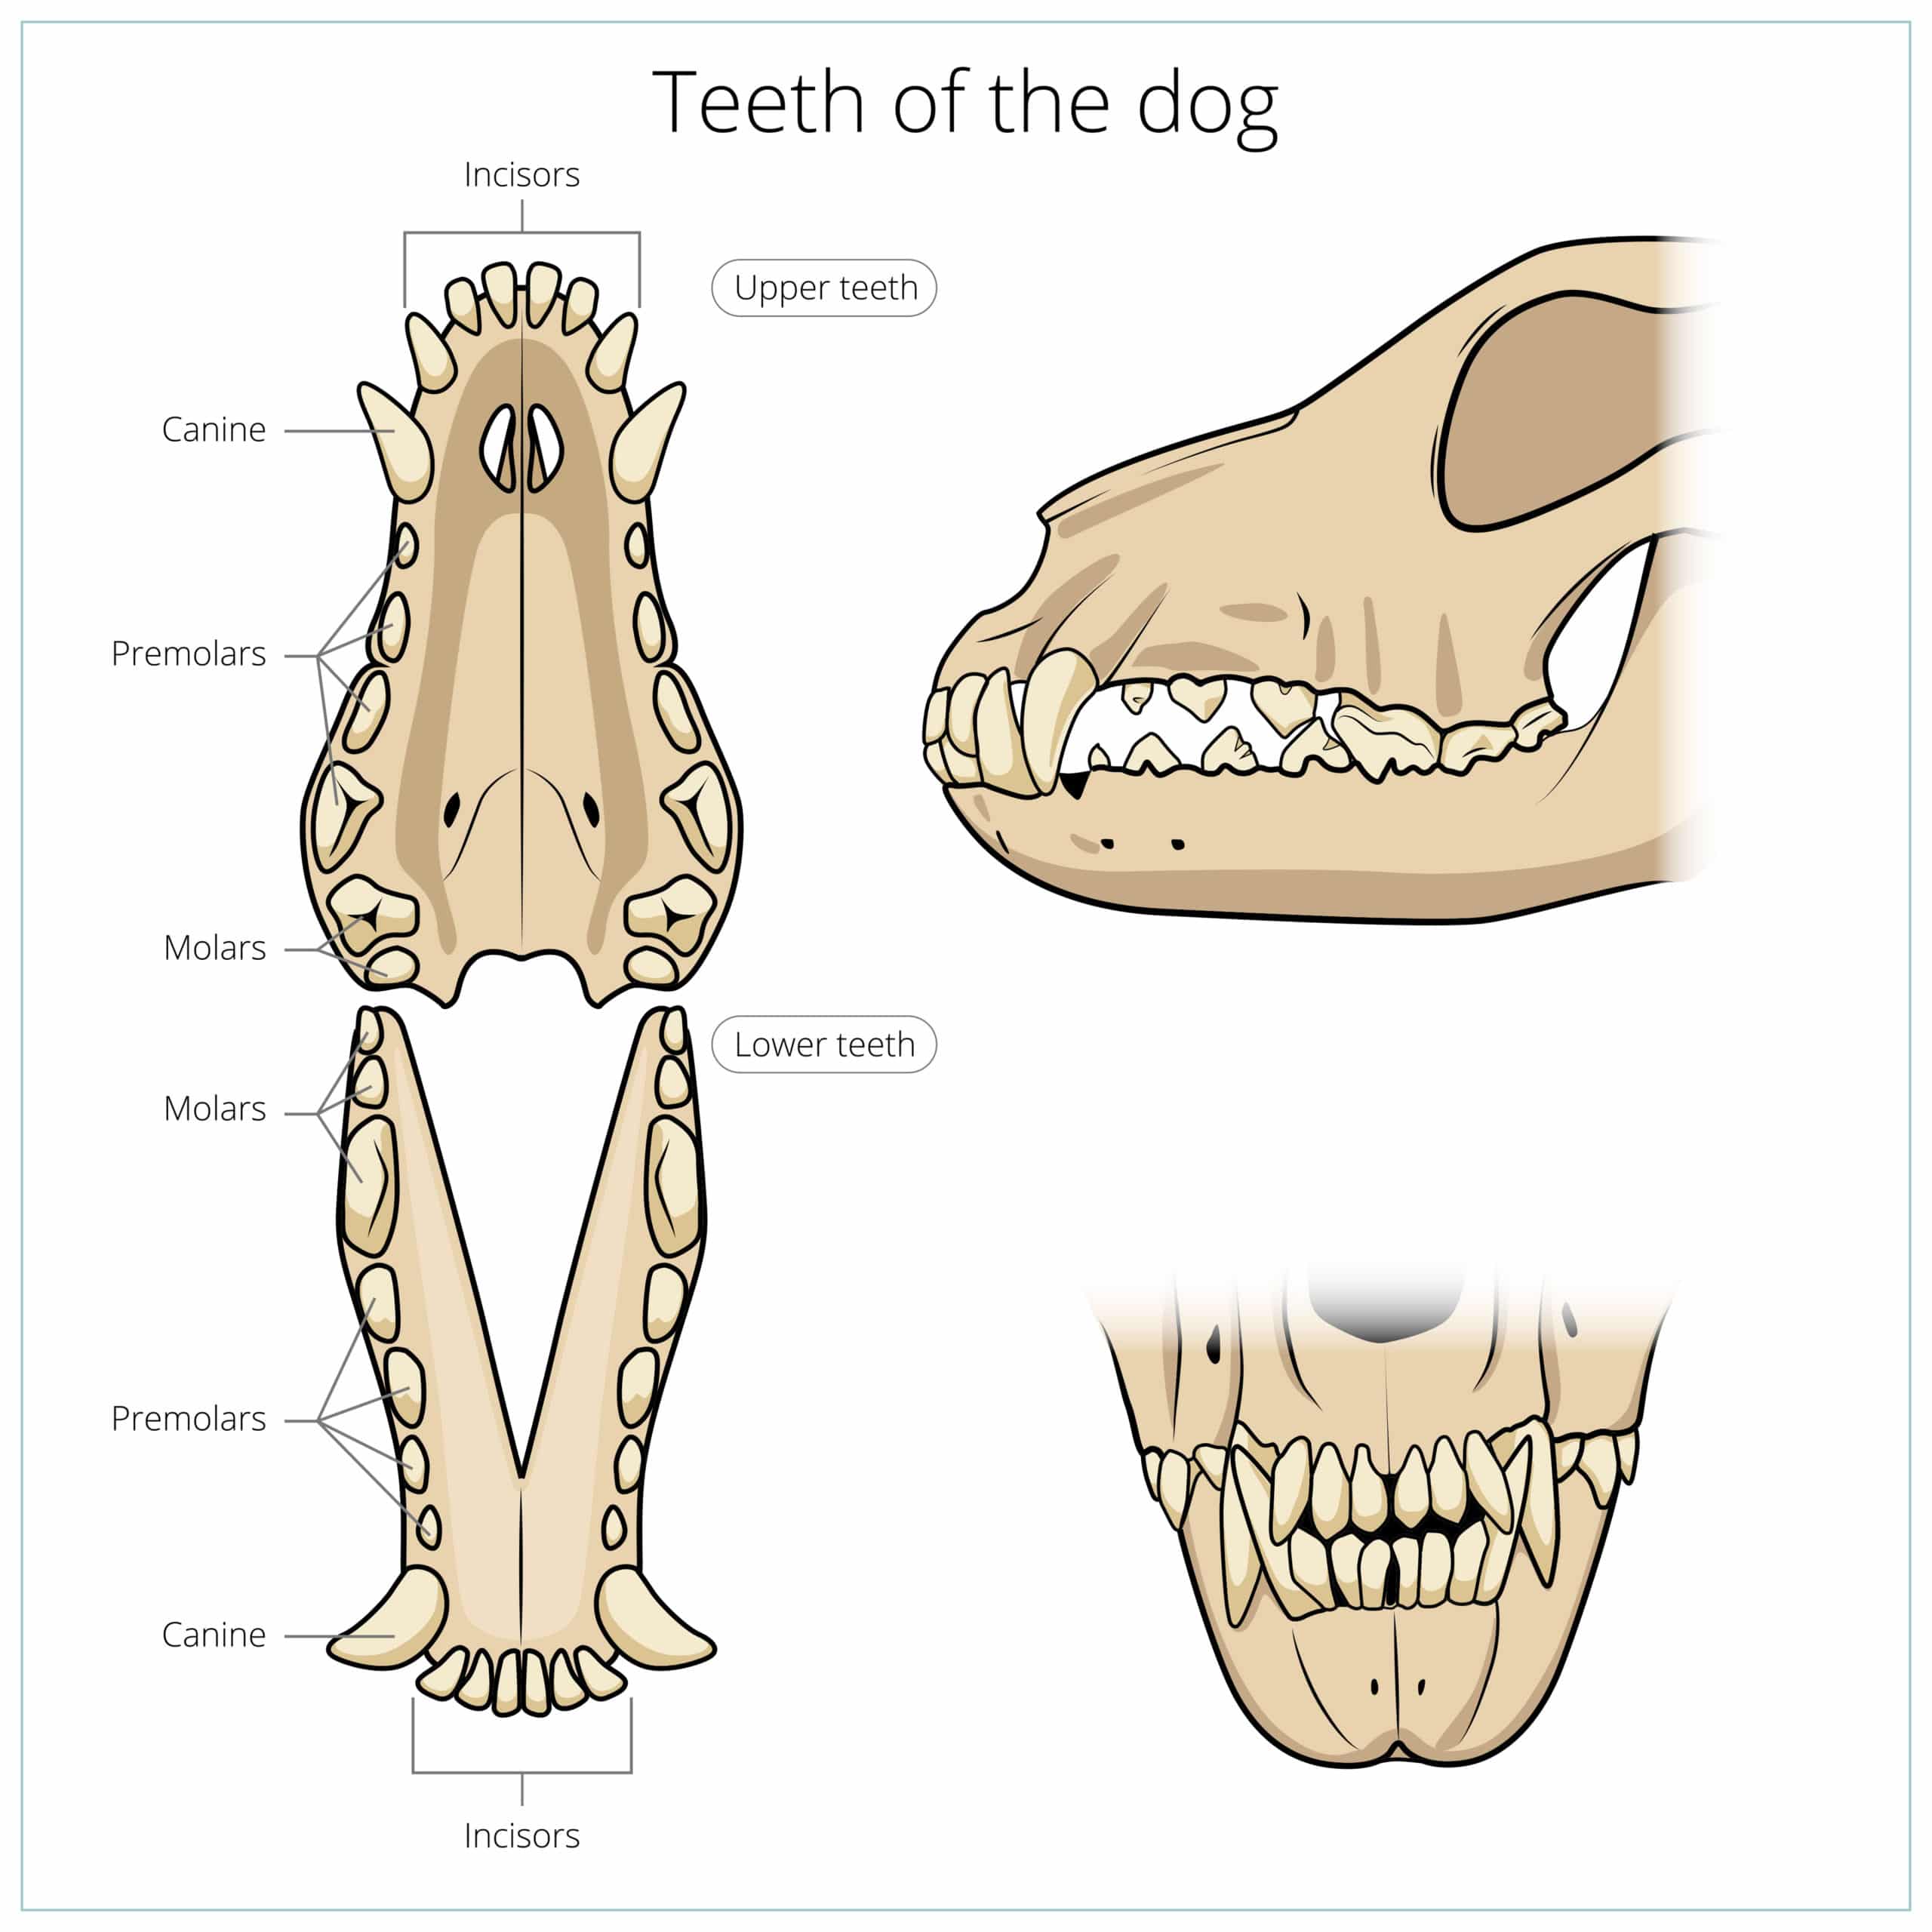 Der erwachsene Jack Russell hat insgesamt 42 Zähne in seinem Gebiss